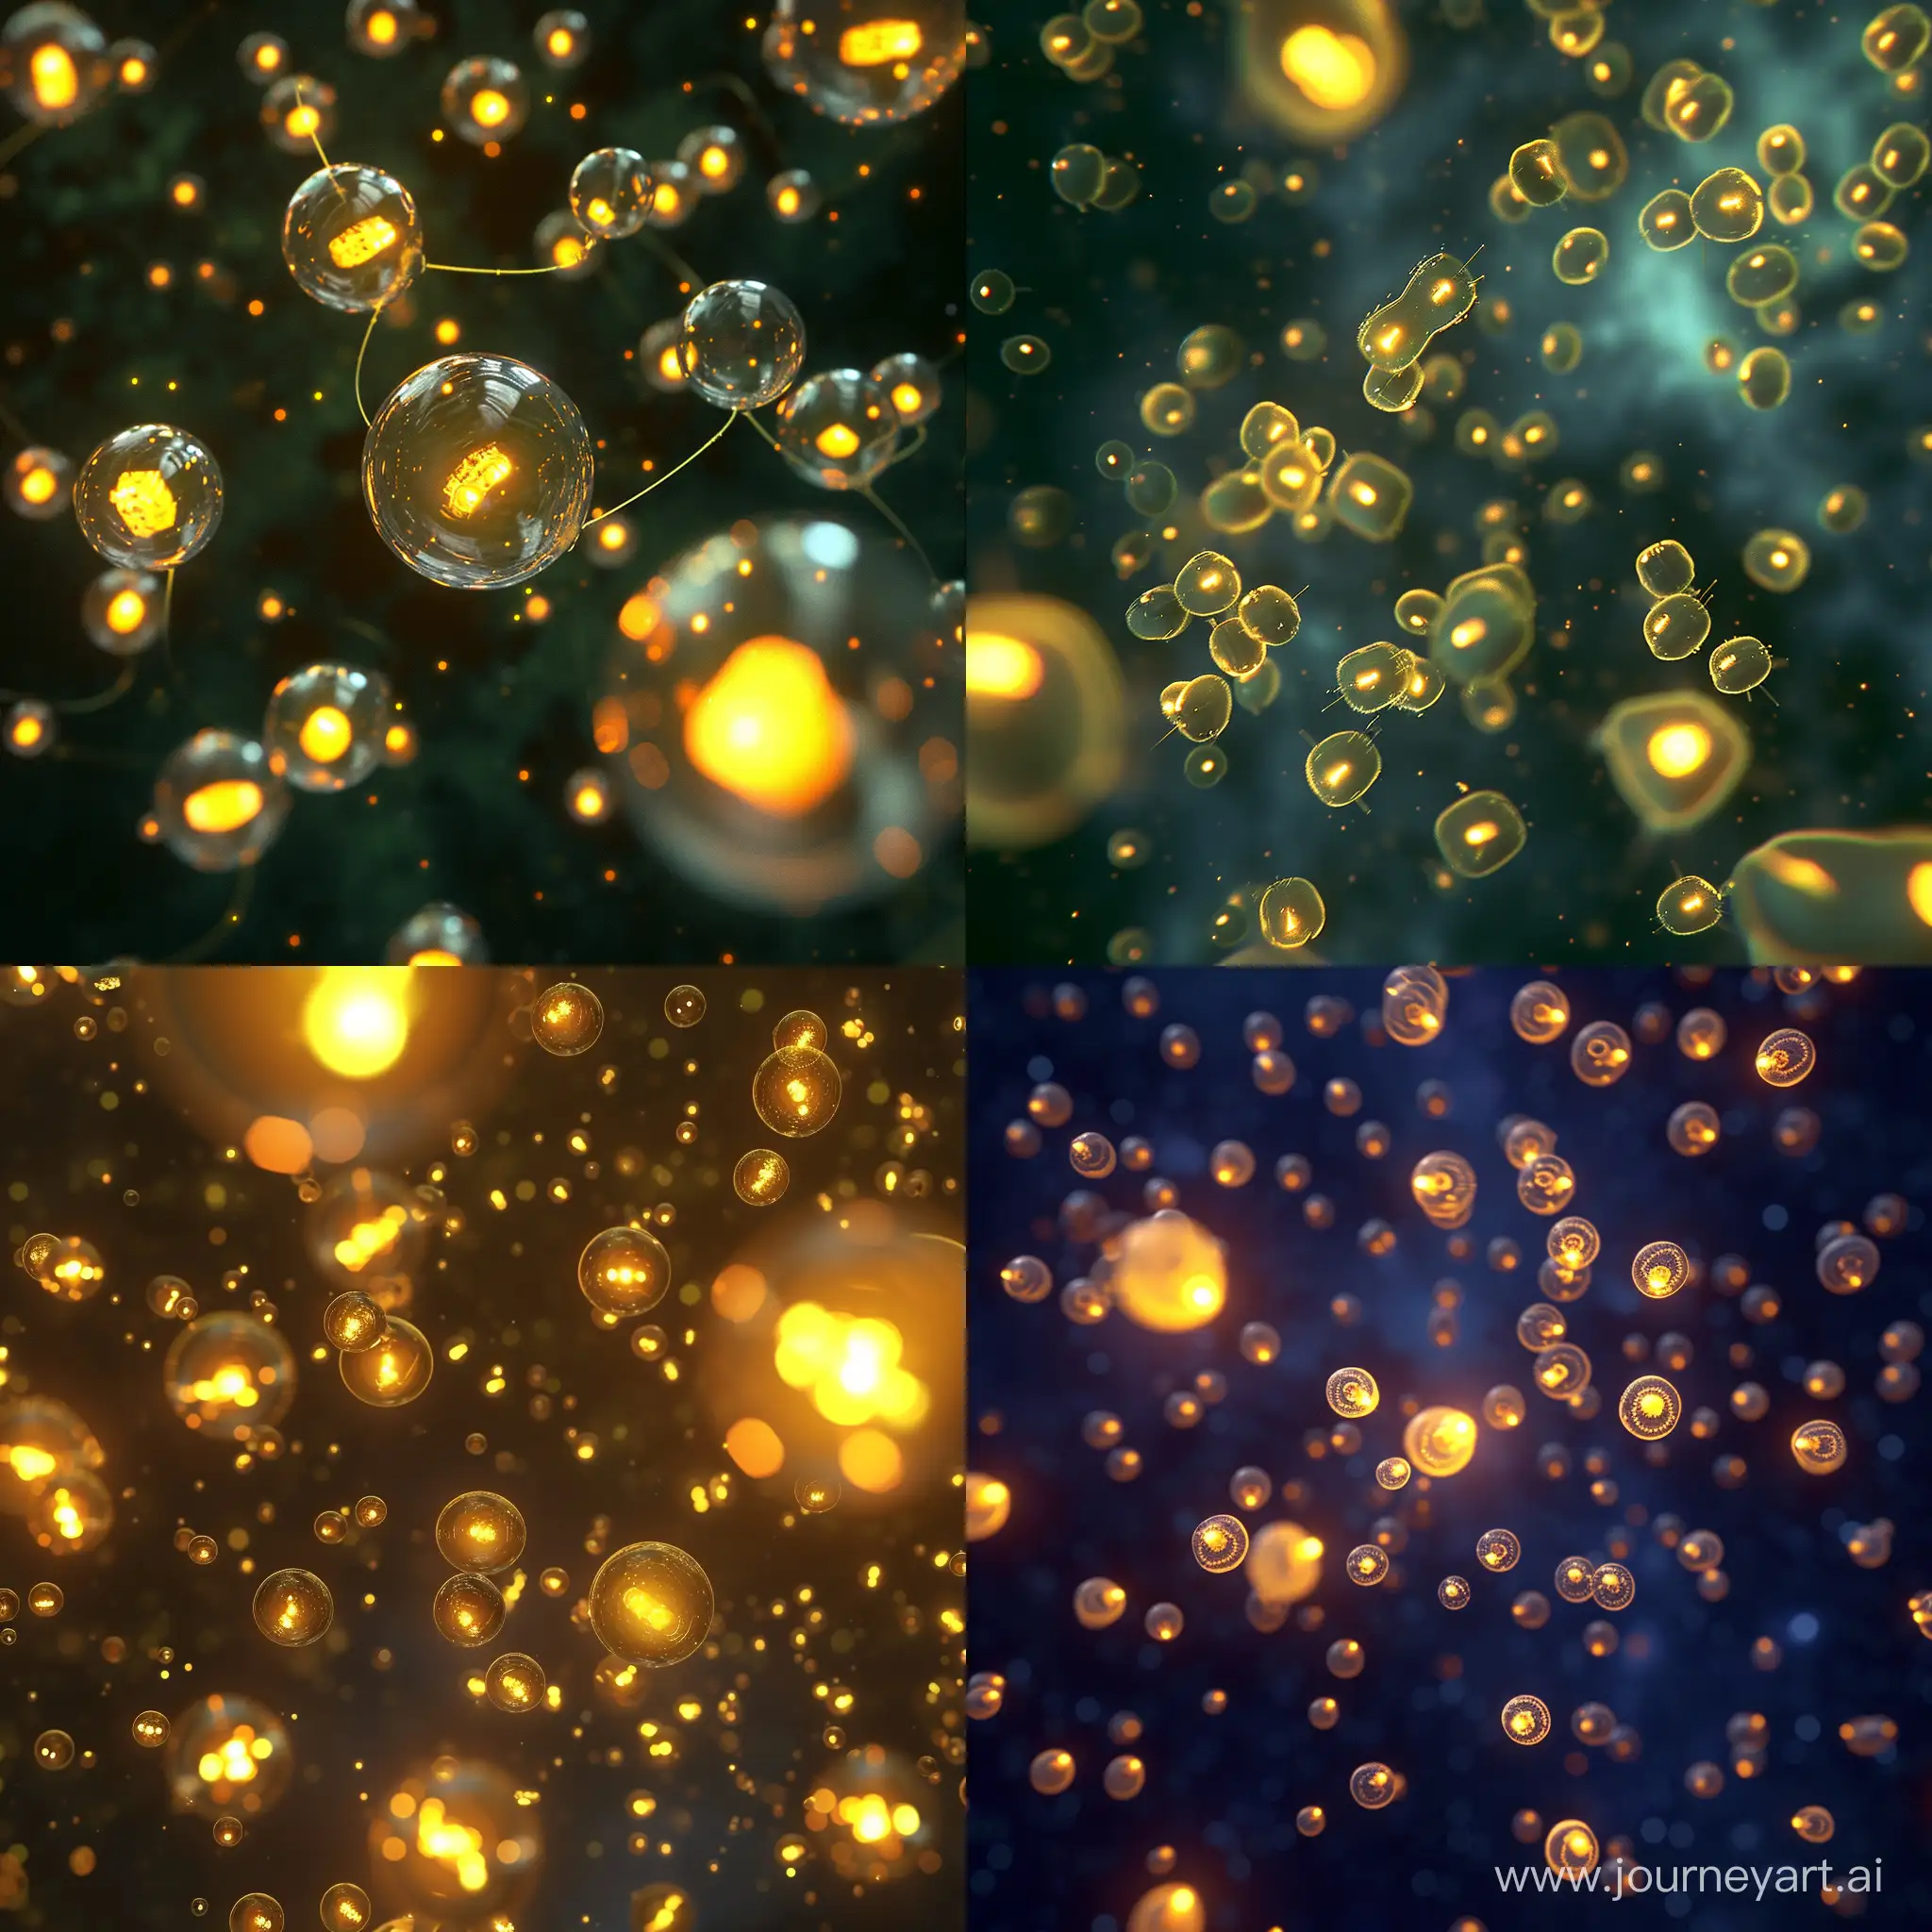 Glowing-Yellow-Nanomachine-Spaceships-Swarm-in-Cosmic-Dance